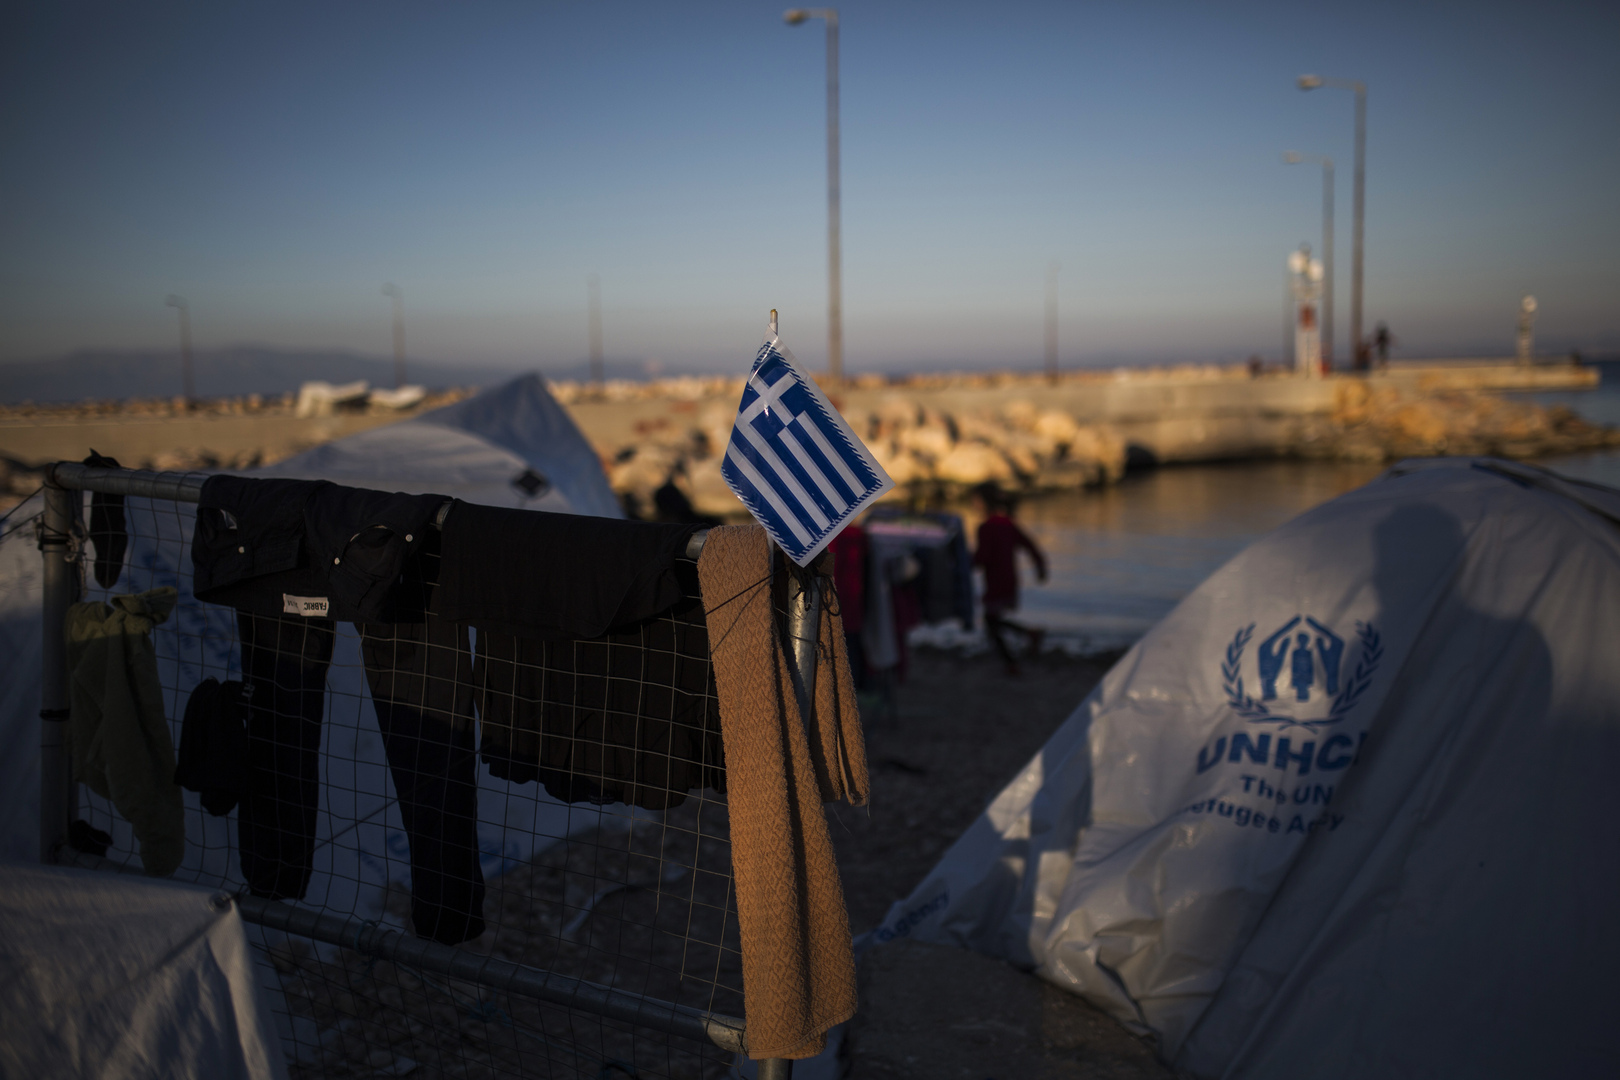 مصرع 3 شقيقات صغيرات إثر غرق مركب للمهاجرين قرب جزيرة خيوس اليونانية